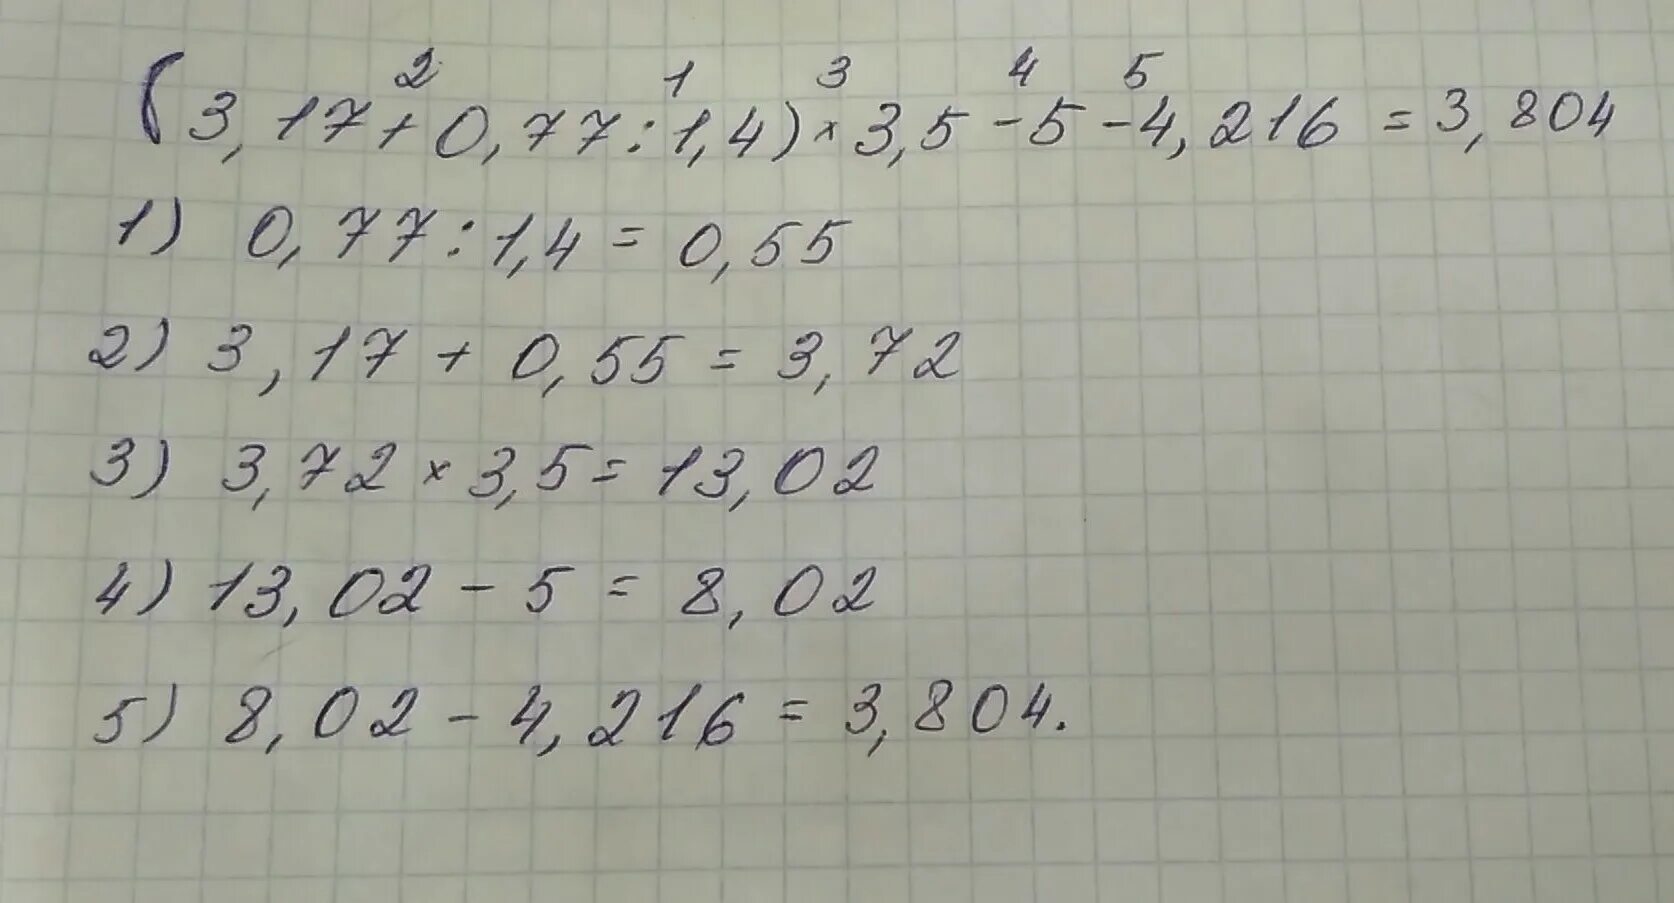 3.5 4 0.5. (3,17+0,77:1,4)*3,5-4,216=Решение. Найдите значение выражения 3 17 0 77 1 4 3 5 4 216. (3,17+0,77:1,4)×3,5-4216 решение. (3,17+0,17:1,4)•3,5-4,216.